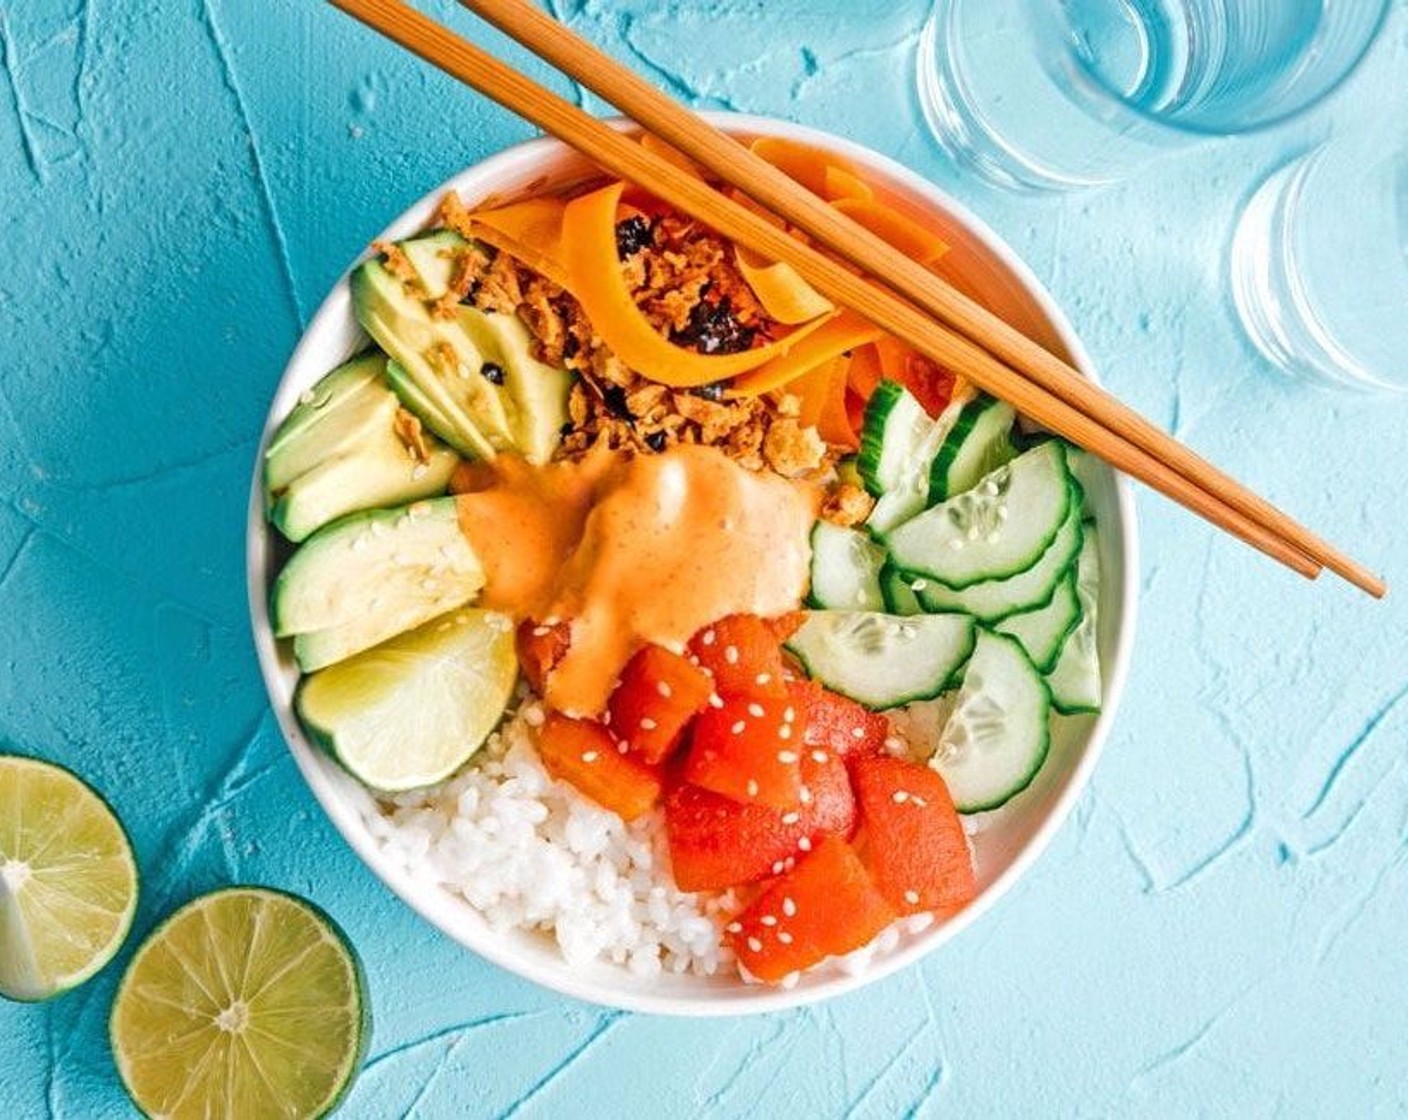 Vegan "Tuna" Sushi Bowl